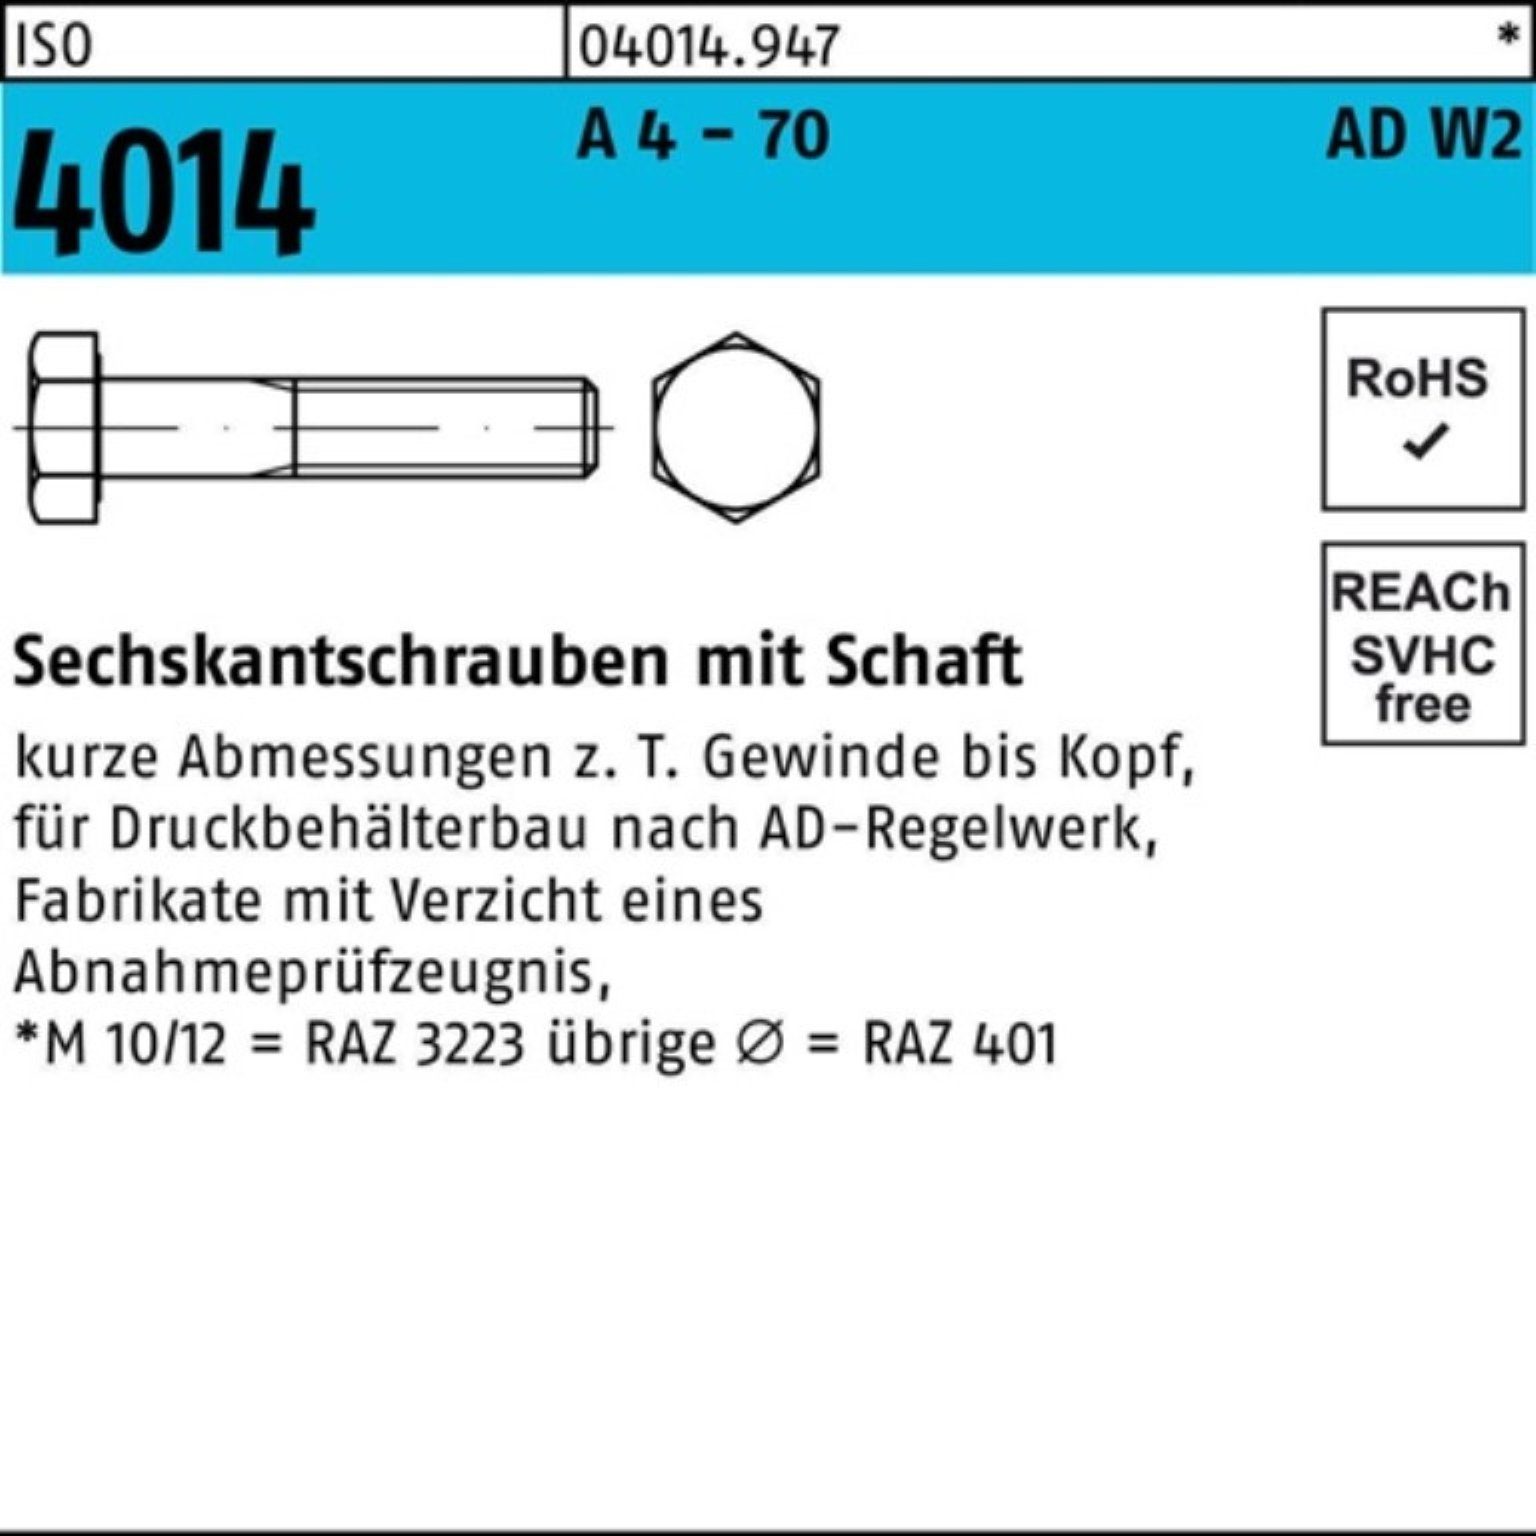 Bufab Sechskantschraube 100er Pack Sechskantschraube ISO 4014 Schaft M12x 140 A 4 - 70 AD-W2 1